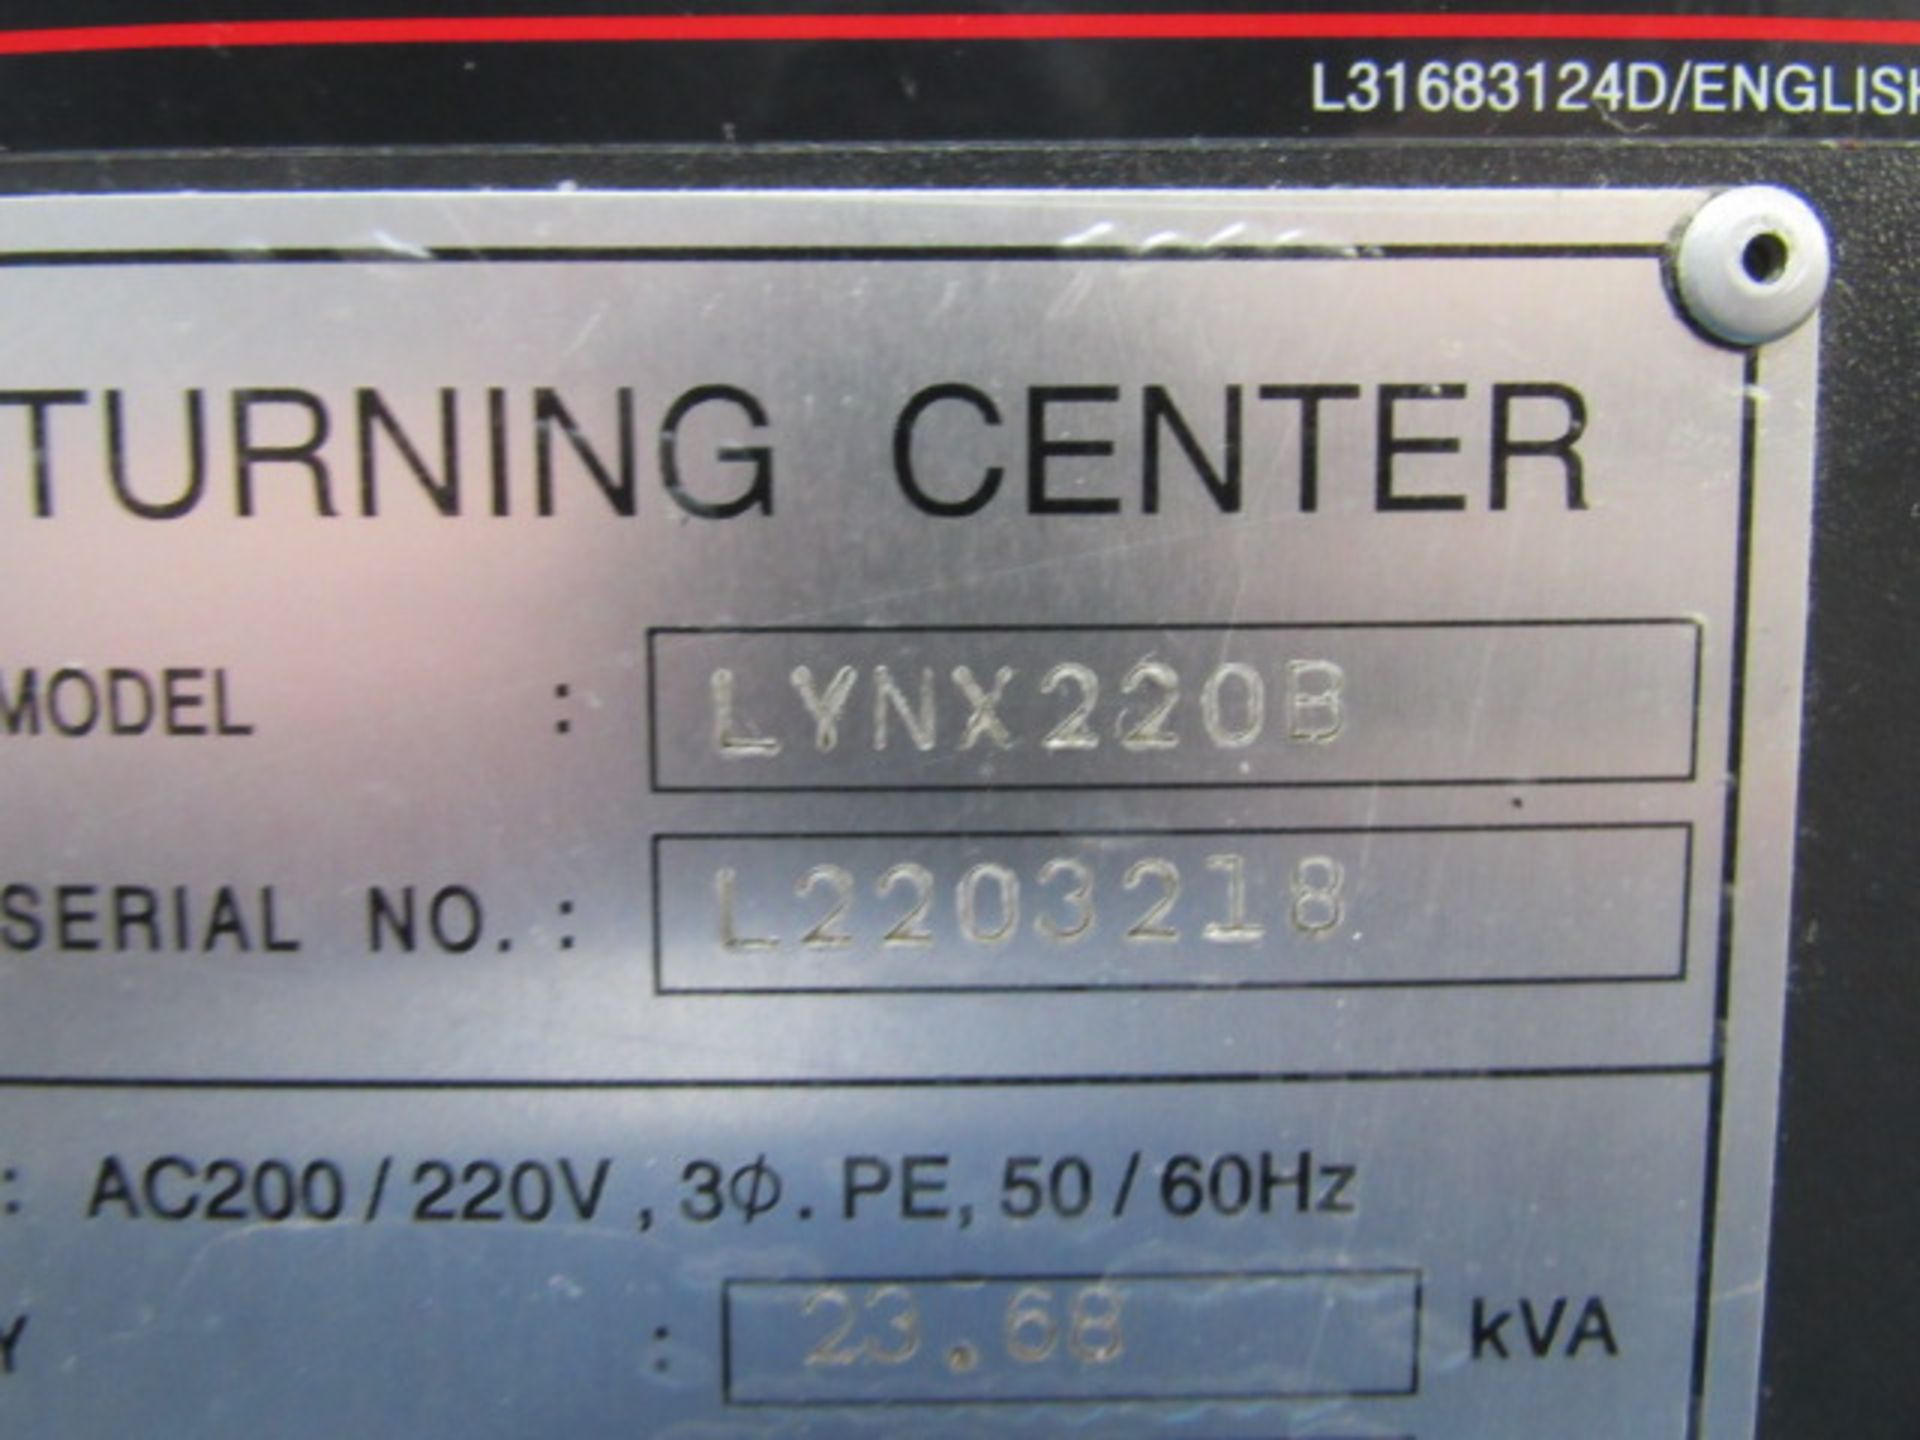 Doosan Lynx 220 B/C CNC Turning Center - Image 8 of 8